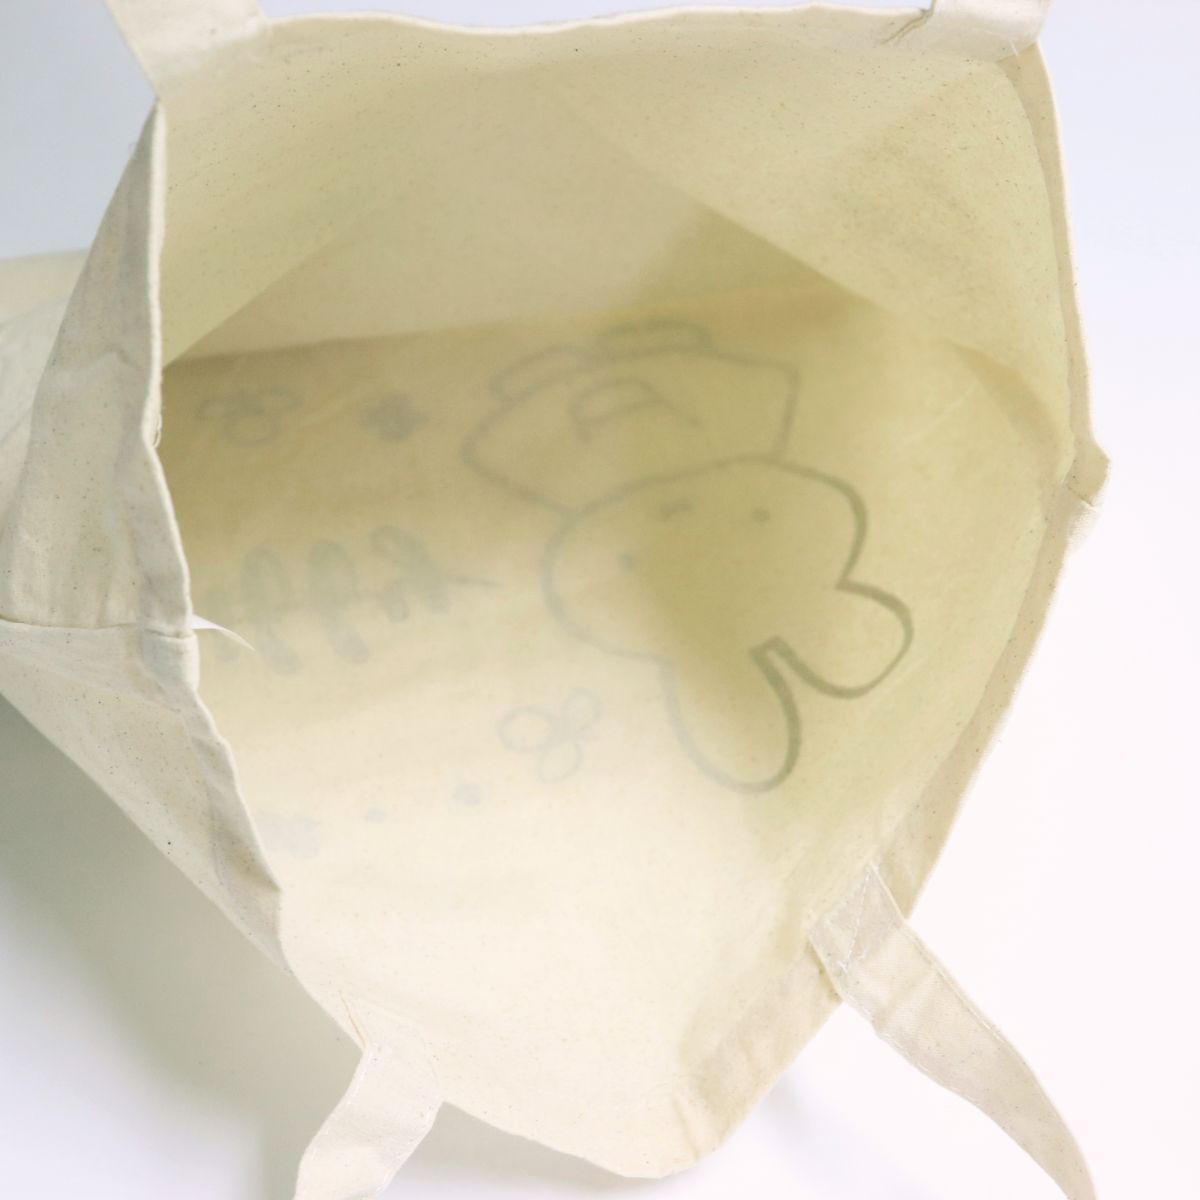 * стоимость доставки 390 иен возможность товар Miffy MIFFY... Chan новый товар брезент парусина большая сумка BAG портфель сумка [MIFFY-GRY1N] один шесть *QWER*